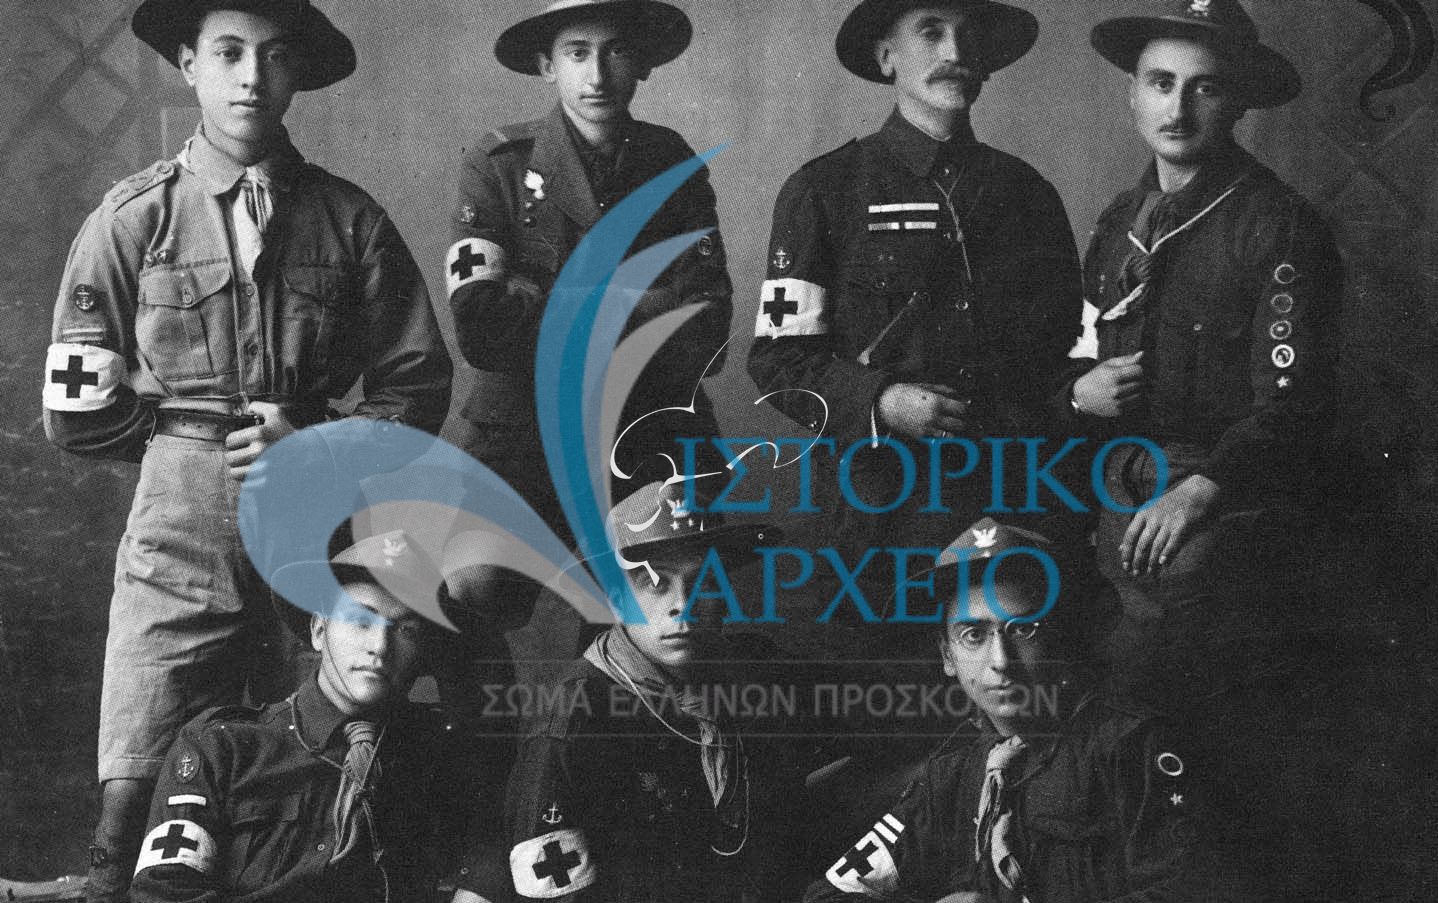 Η πρώτη ομάδα τραυματιοφορέων προσκόπων που κατείχαν δίπλωμα από τον Ελληνικό Ερυθρό Σταυρό. Η ομάδα πρόσφερε πολύτιμες υπηρεσίες στους τραυματίες κατά τα γεγονότα του "εθνικού διχασμού" τον Νοέμβριο του 1916. Από δεξιά: Η. Ησαϊας, Μ. Μίνδλερ, Γ. Μίνδλερ, Στ. Νίκογλου, Αντ. Σαρηγιάννης, Λ. Γορτσίδης, Λ. Μαλακατές.